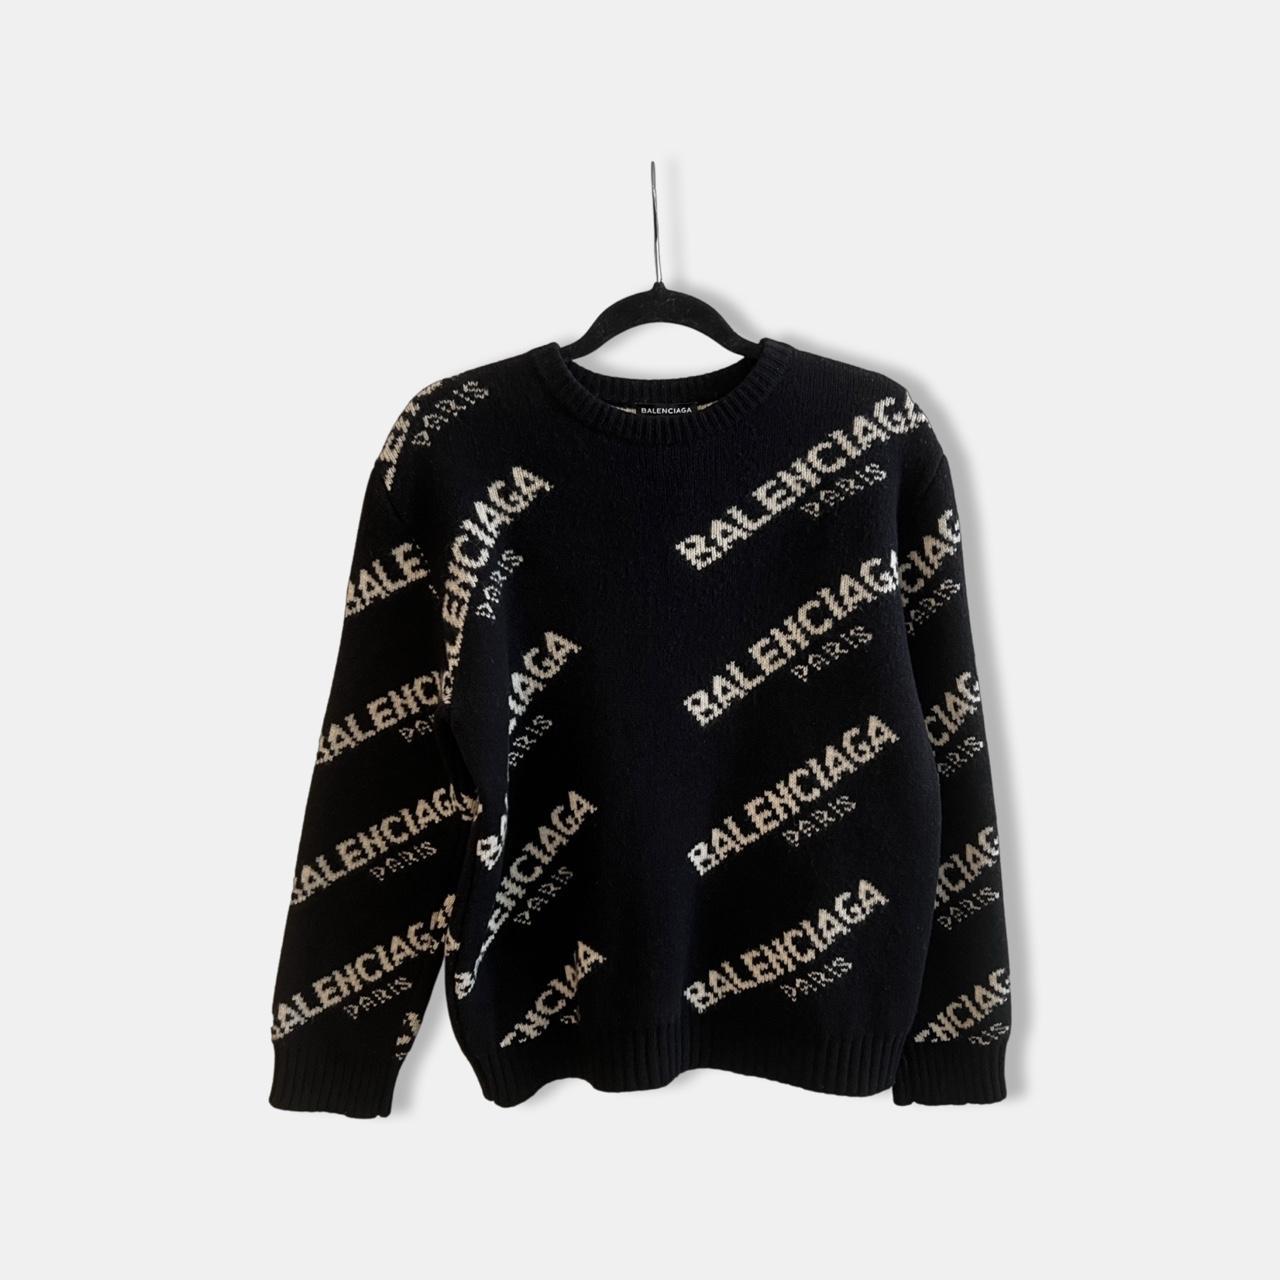 spole Høj eksponering overrasket Balenciaga Sweater in black and white. 100%... - Depop